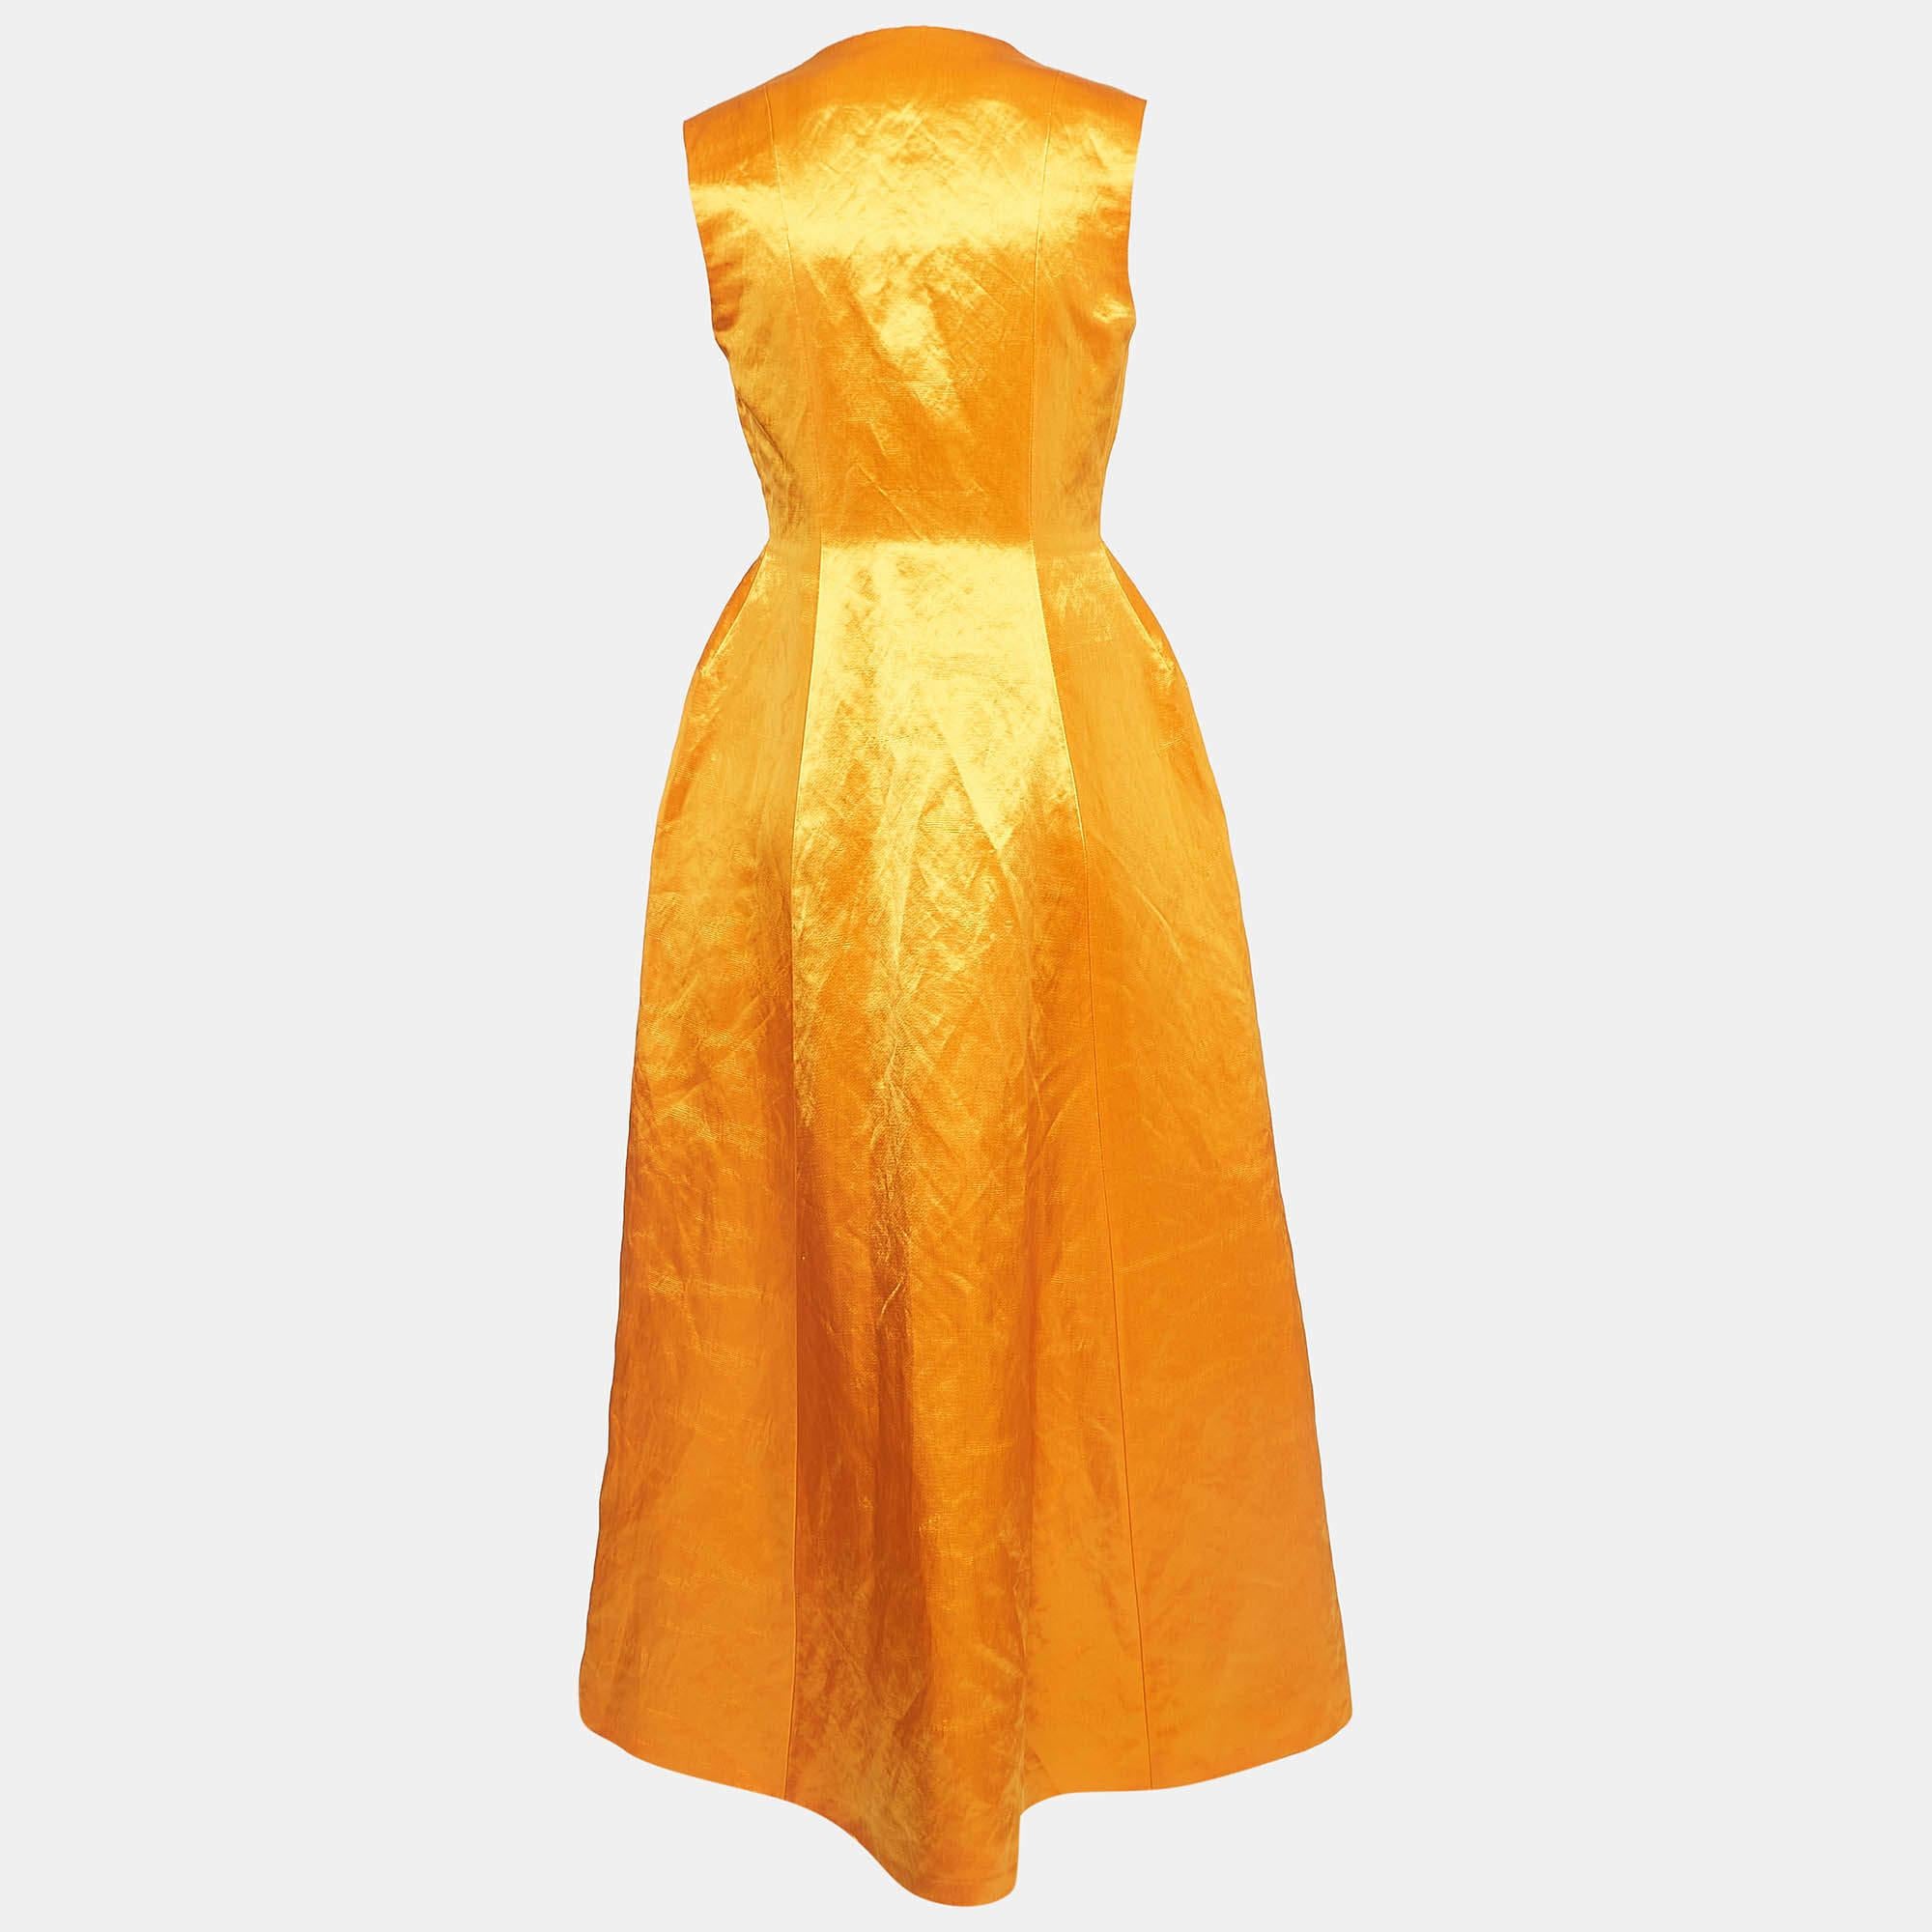 Une magnifique teinte orange et des coupes élégantes rehaussent le charme de cette robe longue Dior. Confectionnée en satin, cette création est dotée d'une taille cintrée et d'une fermeture à crochet pour un ajustement parfait. Complétez cette robe